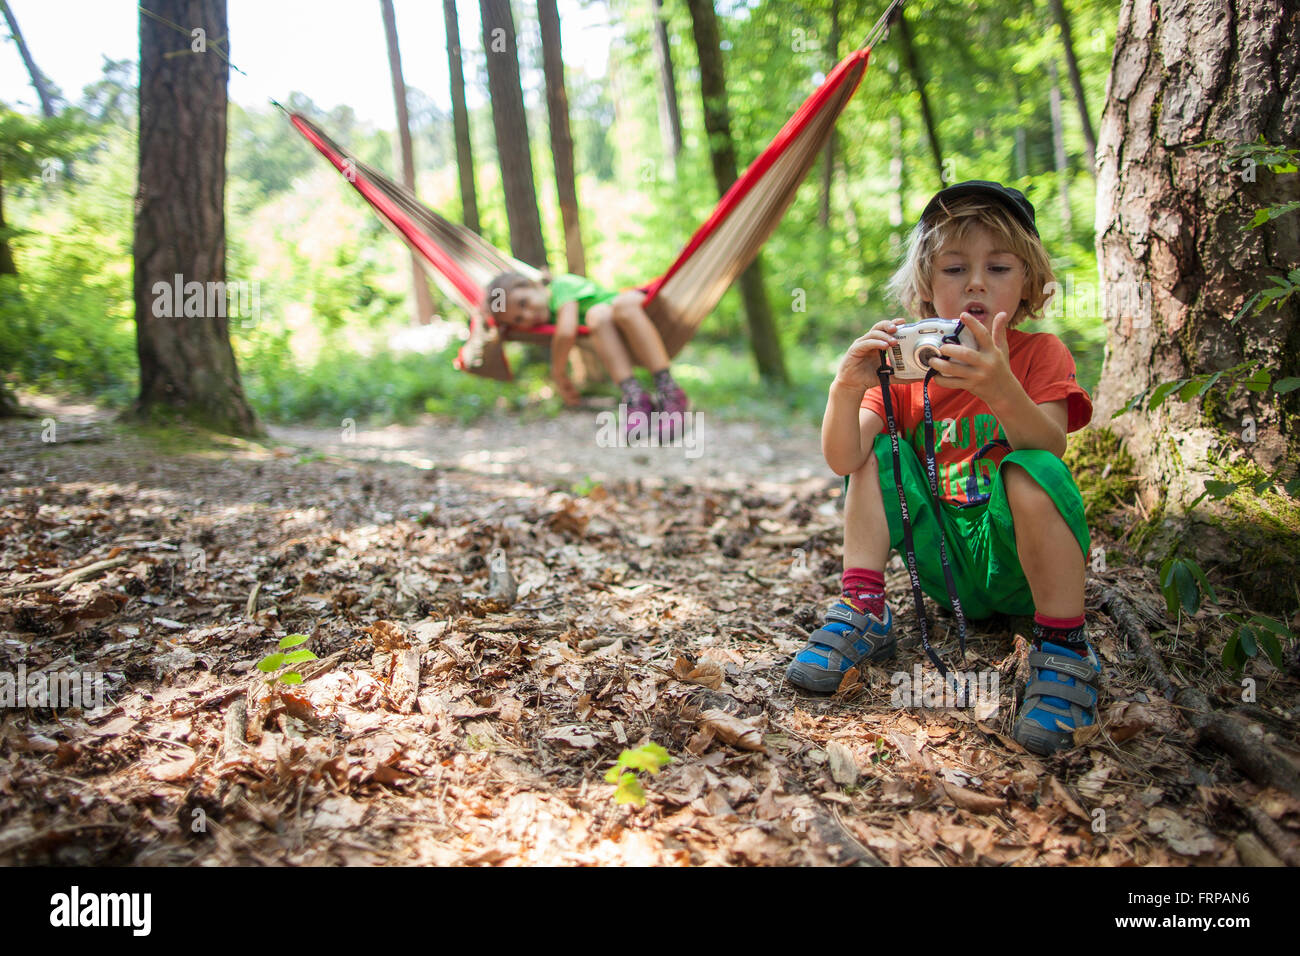 Une fillette de 5 ans dans un hamac, avec son frère à jouer avec un appareil photo. Dans une forêt, France. Banque D'Images